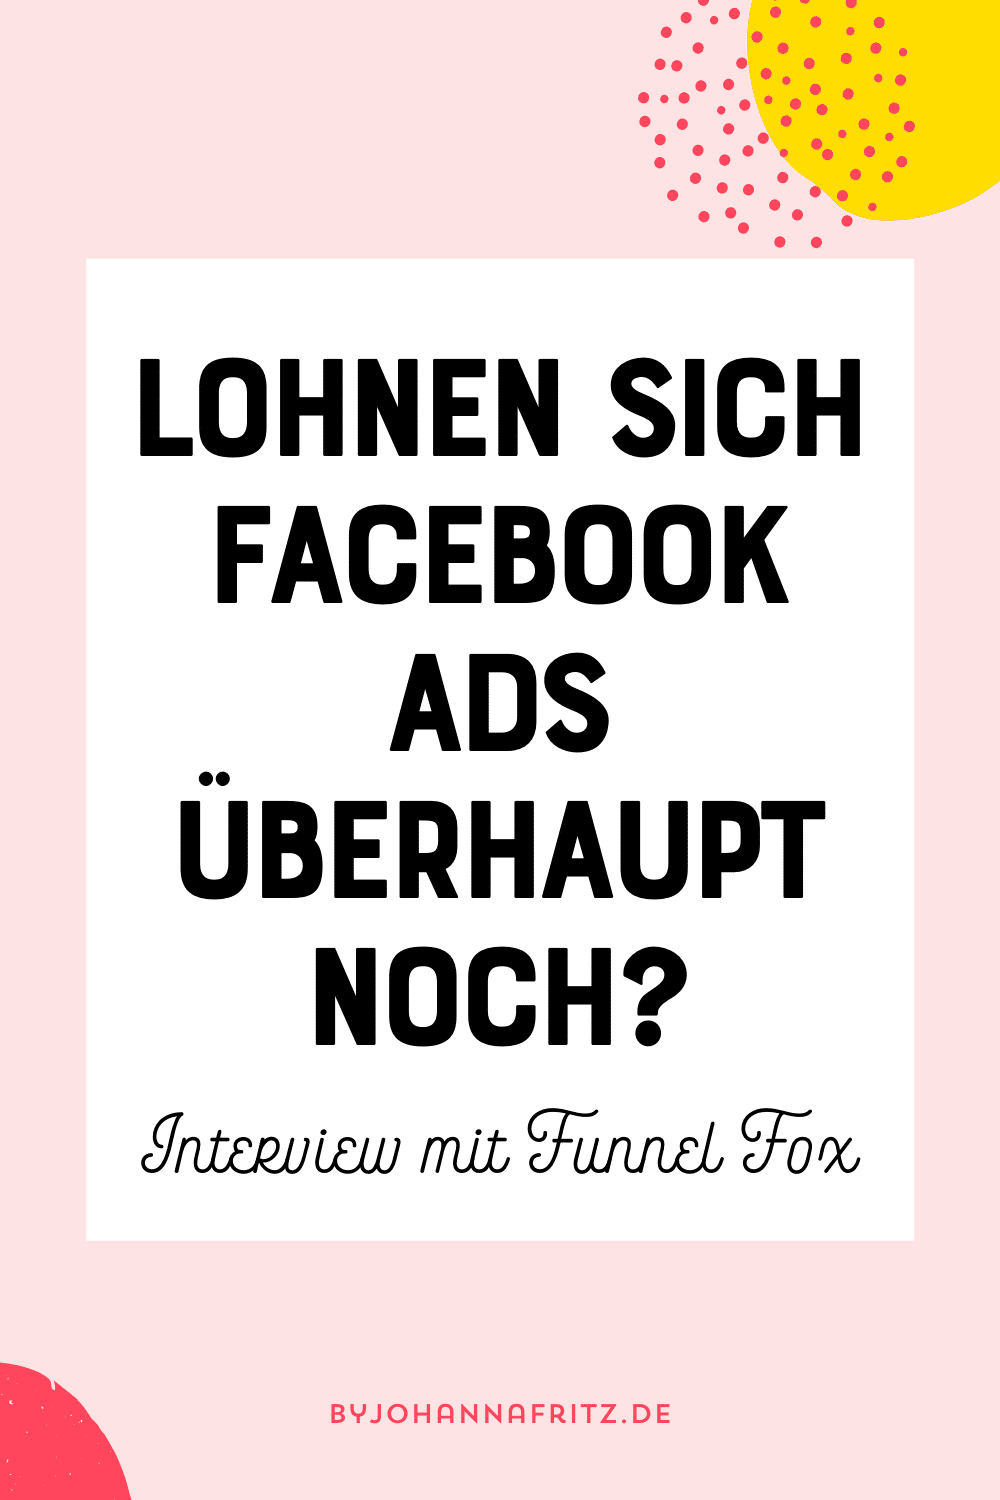 Lohnen sich Facebook Ads überhaupt noch? - Interview mit Funnel Fox by Johanna Fritz